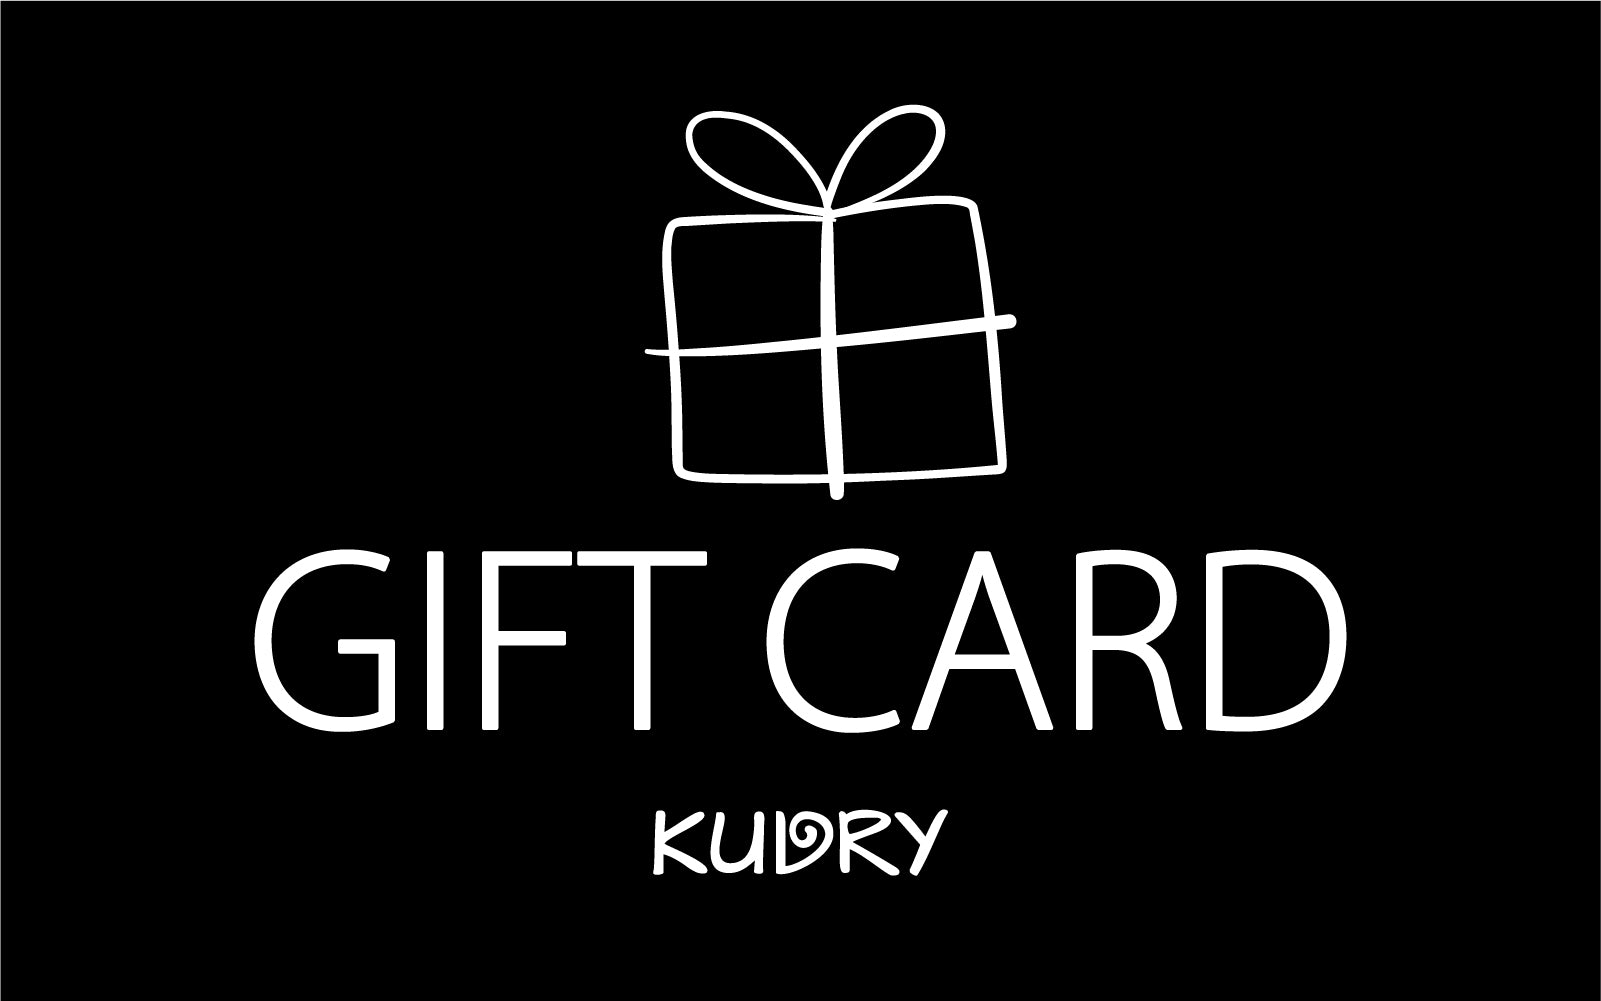 Gift Card kudrylab